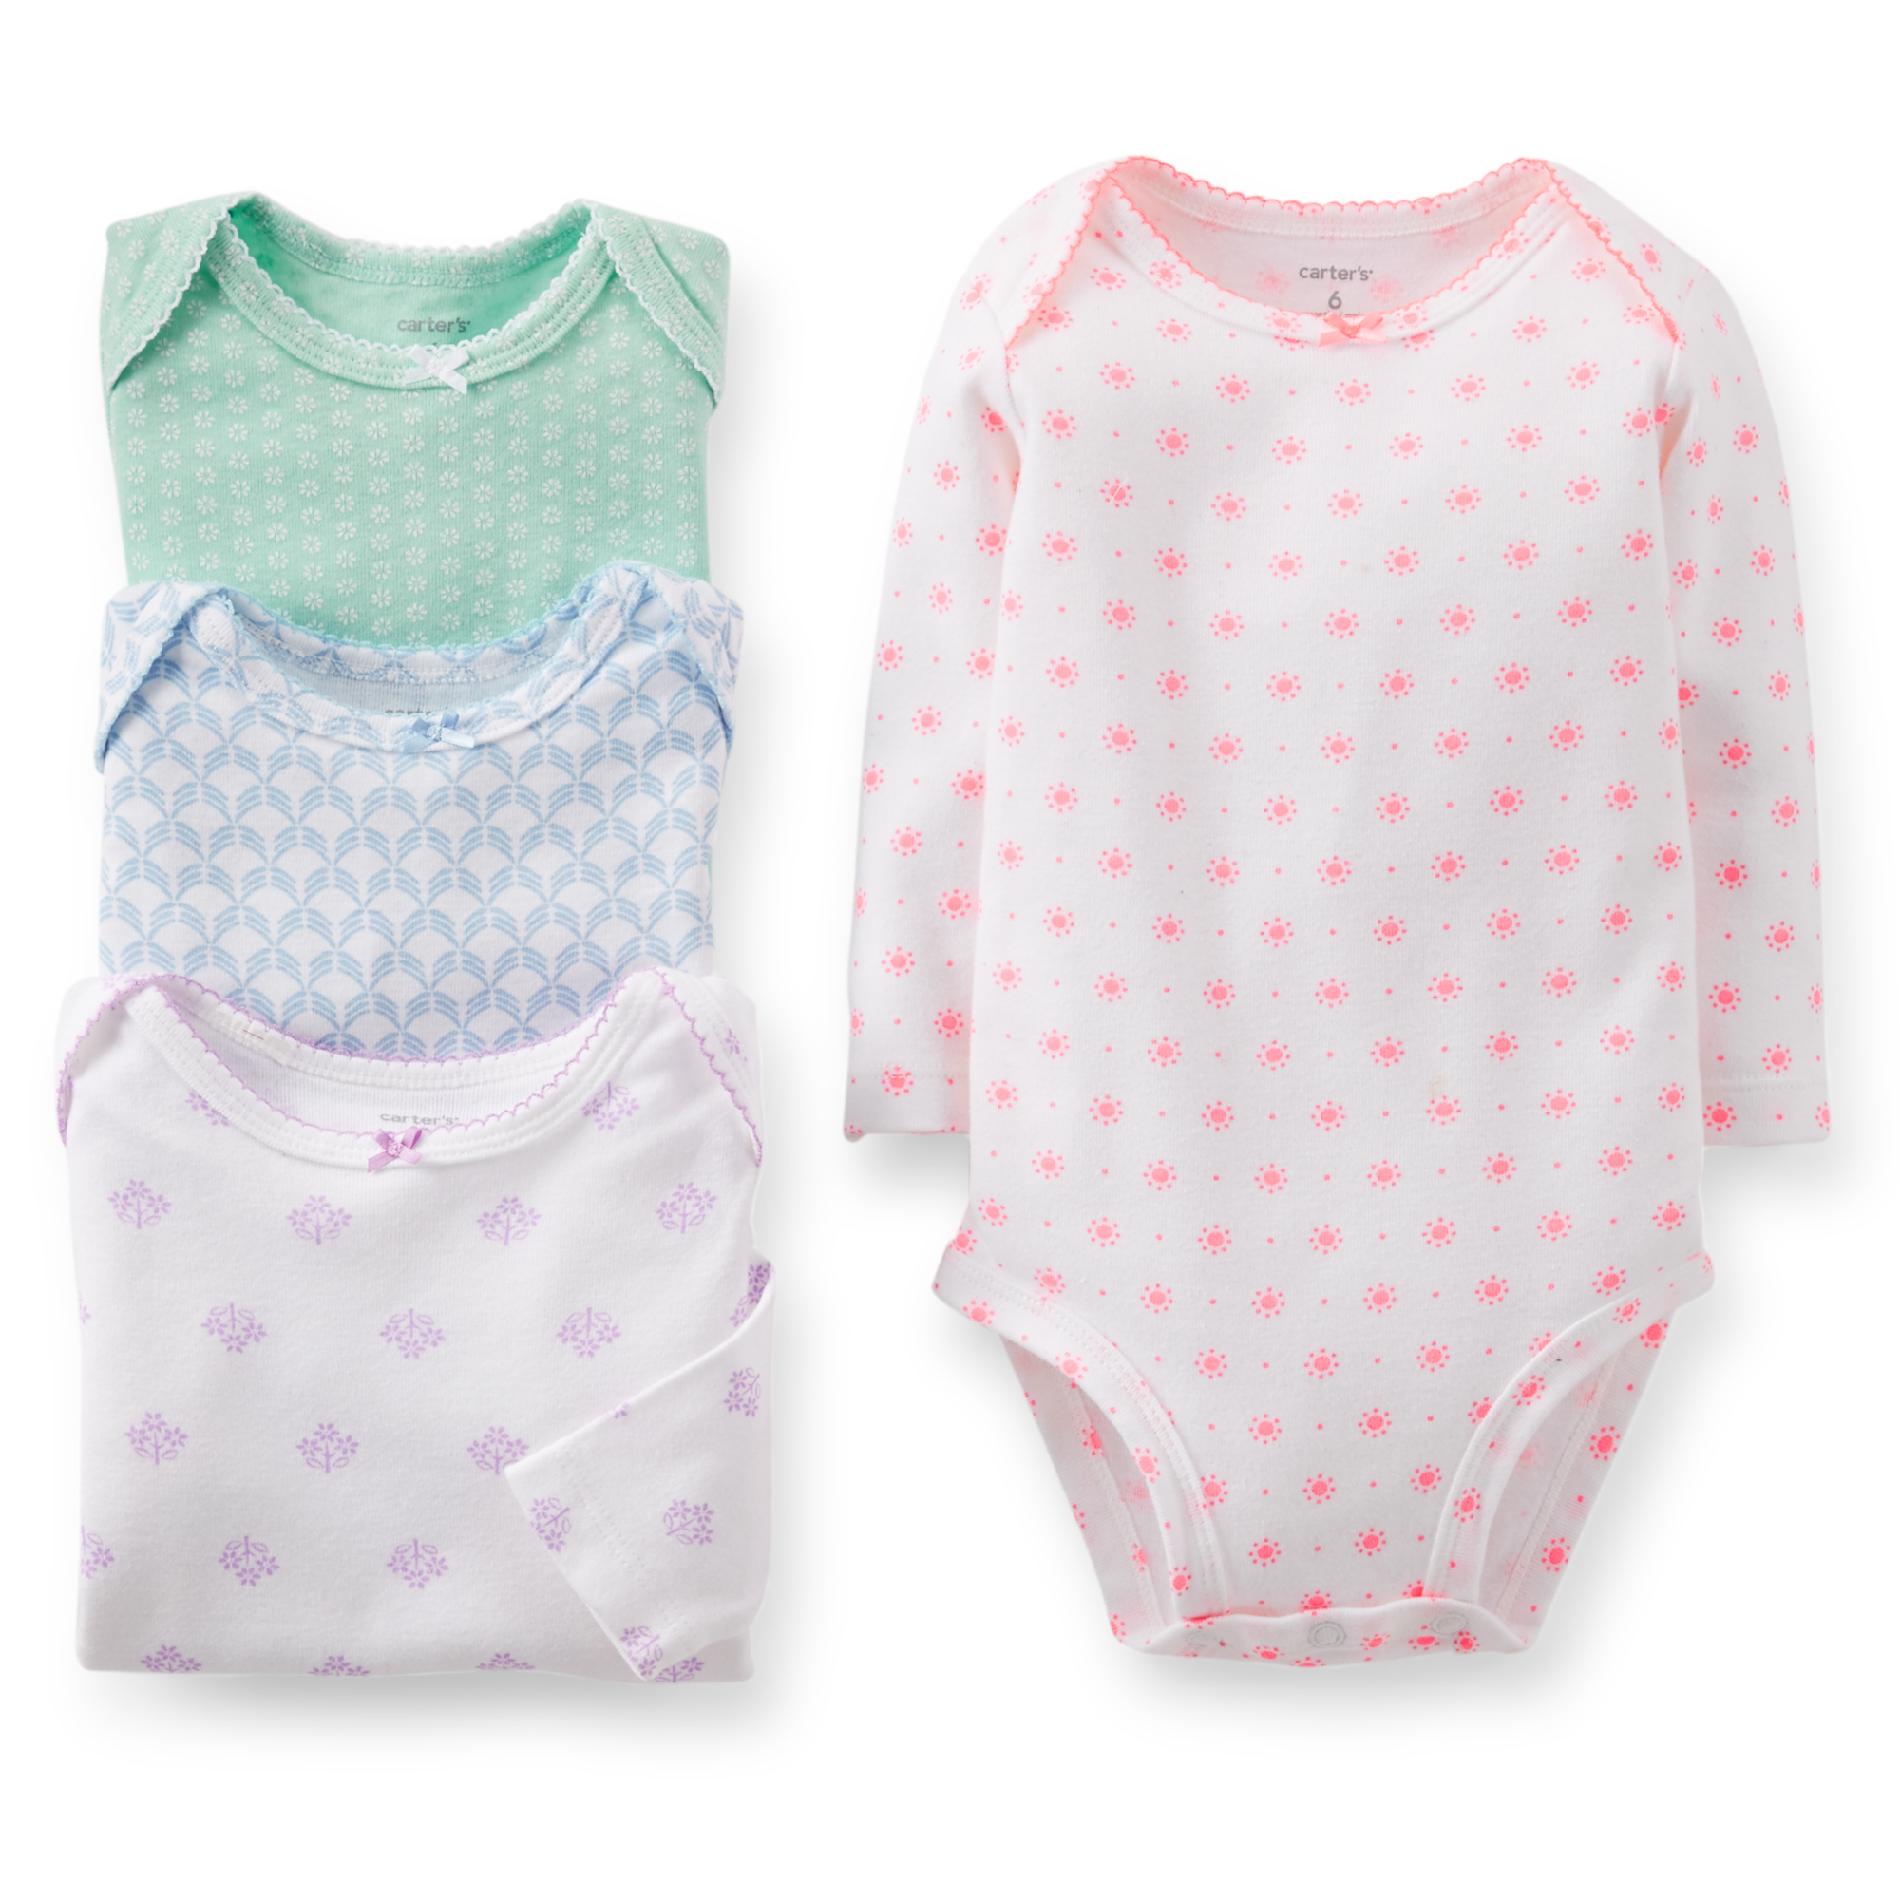 Carter's Newborn & Infant Girl's 4-pack Long Sleeved Bodysuits